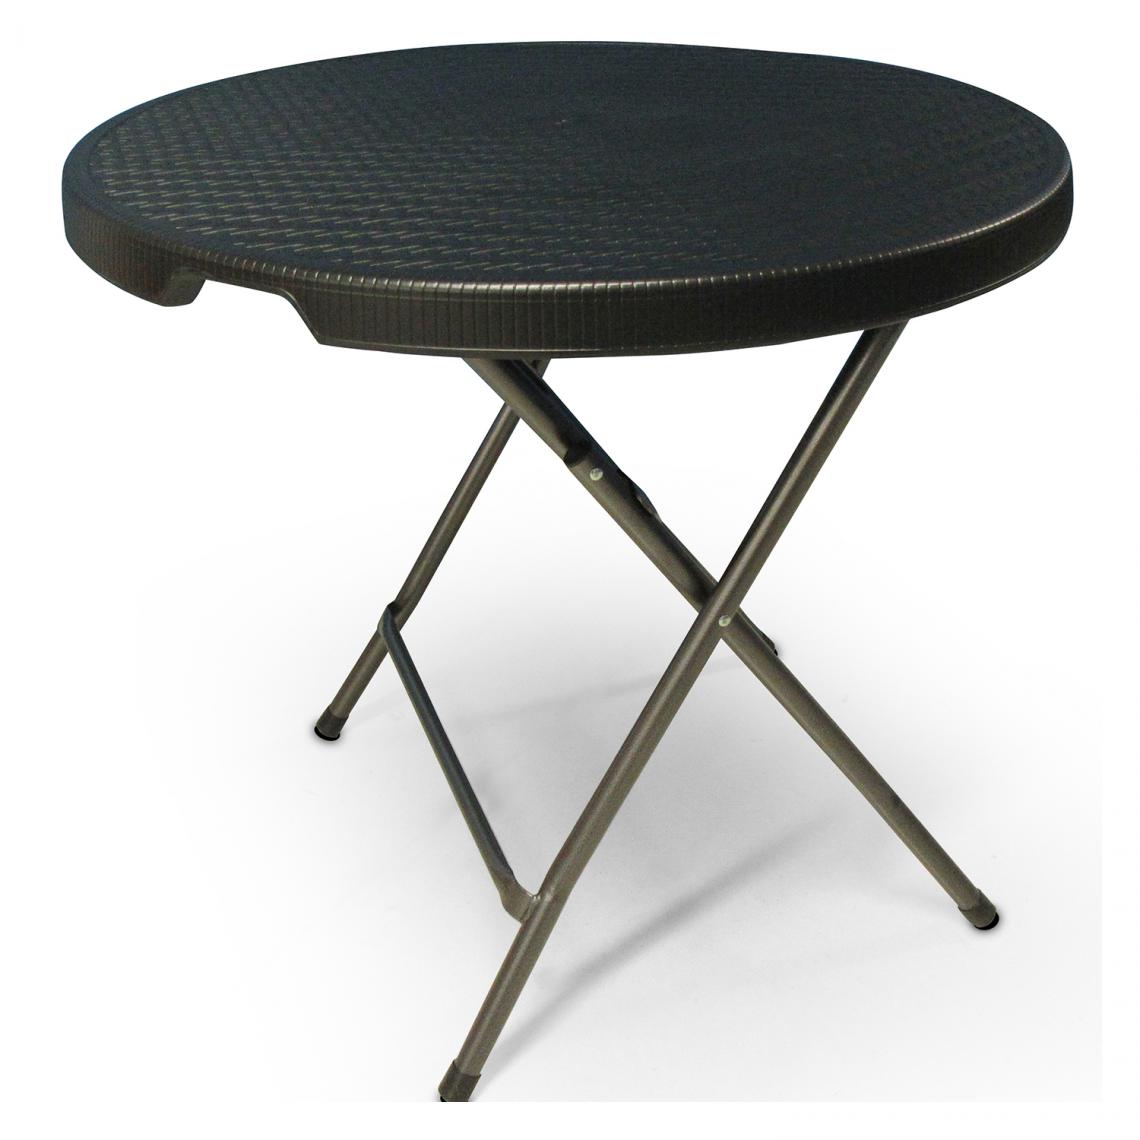 Alter - Table pliante ronde en métal et plastique effet rotin, coloris noir, dimensions : 80 x 80 x h74 cm 80 x h74 - Tables à manger